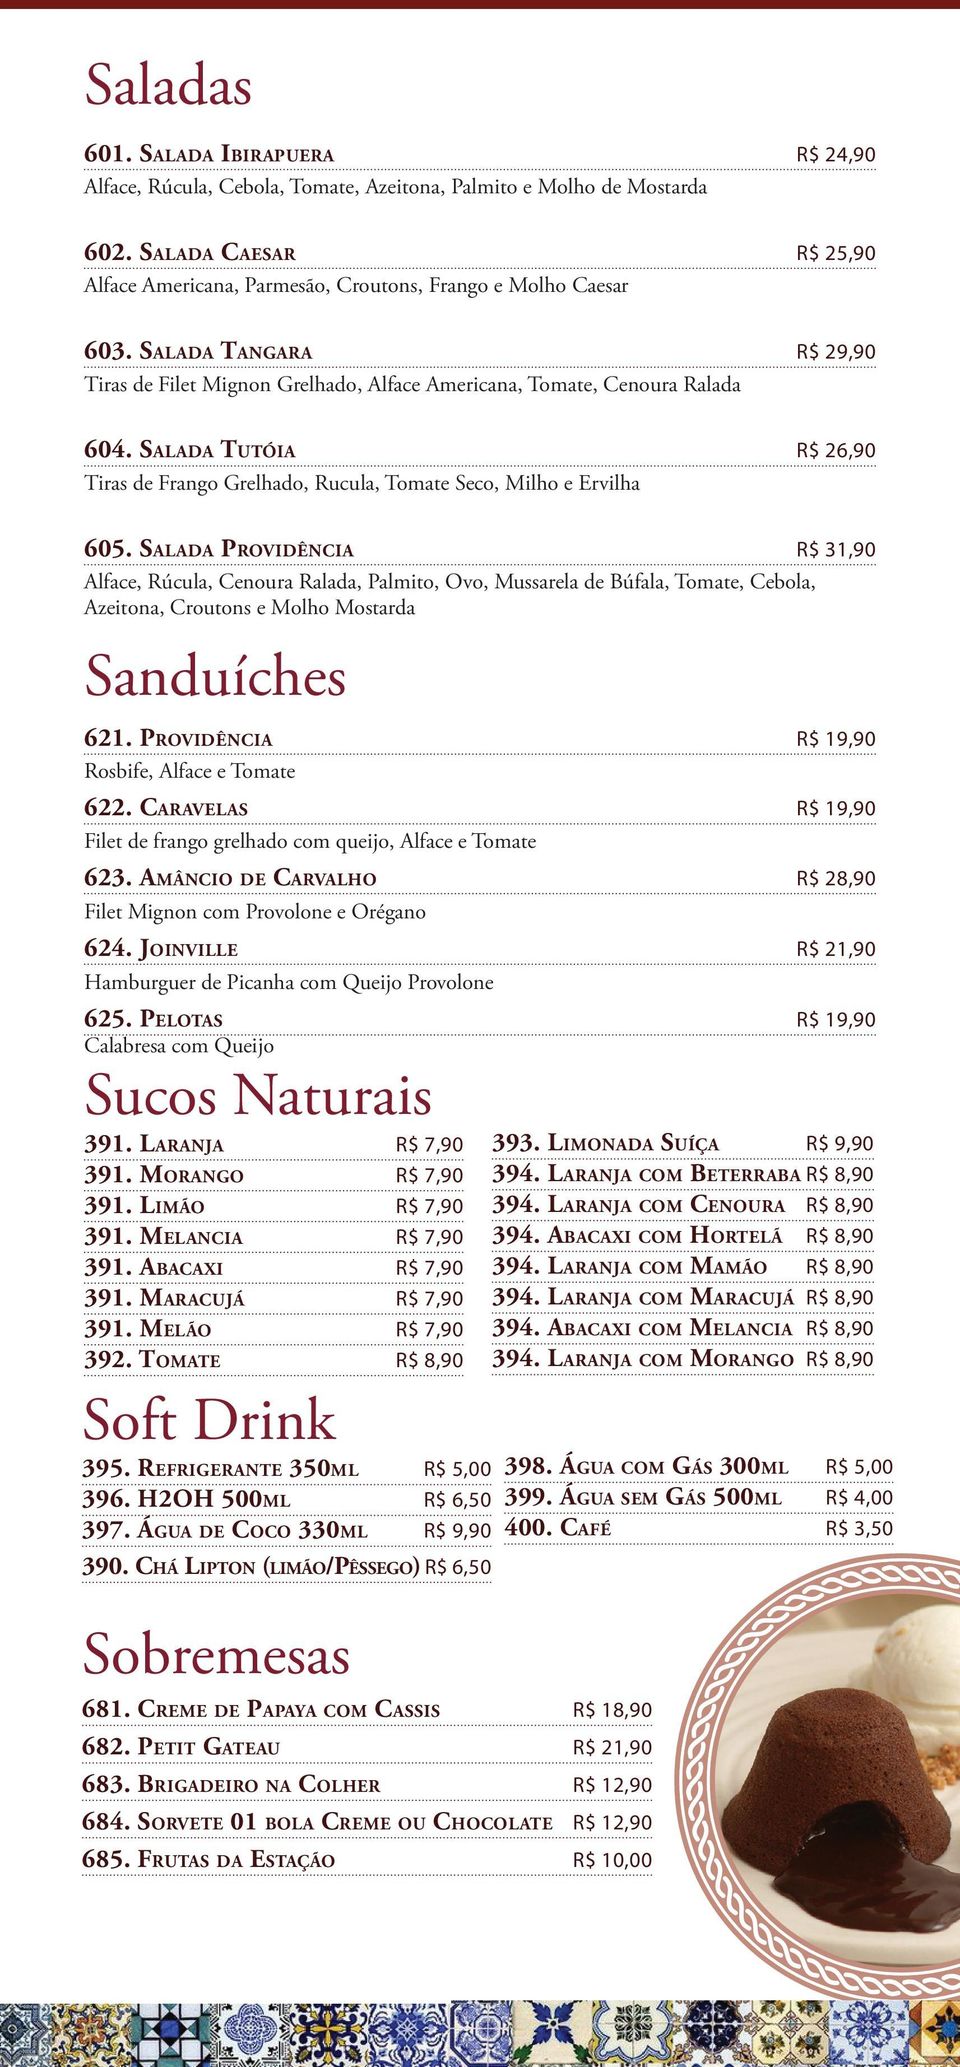 Salada Tutóia R$ 26,90 Tiras de Frango Grelhado, Rucula, Tomate Seco, Milho e Ervilha 605.